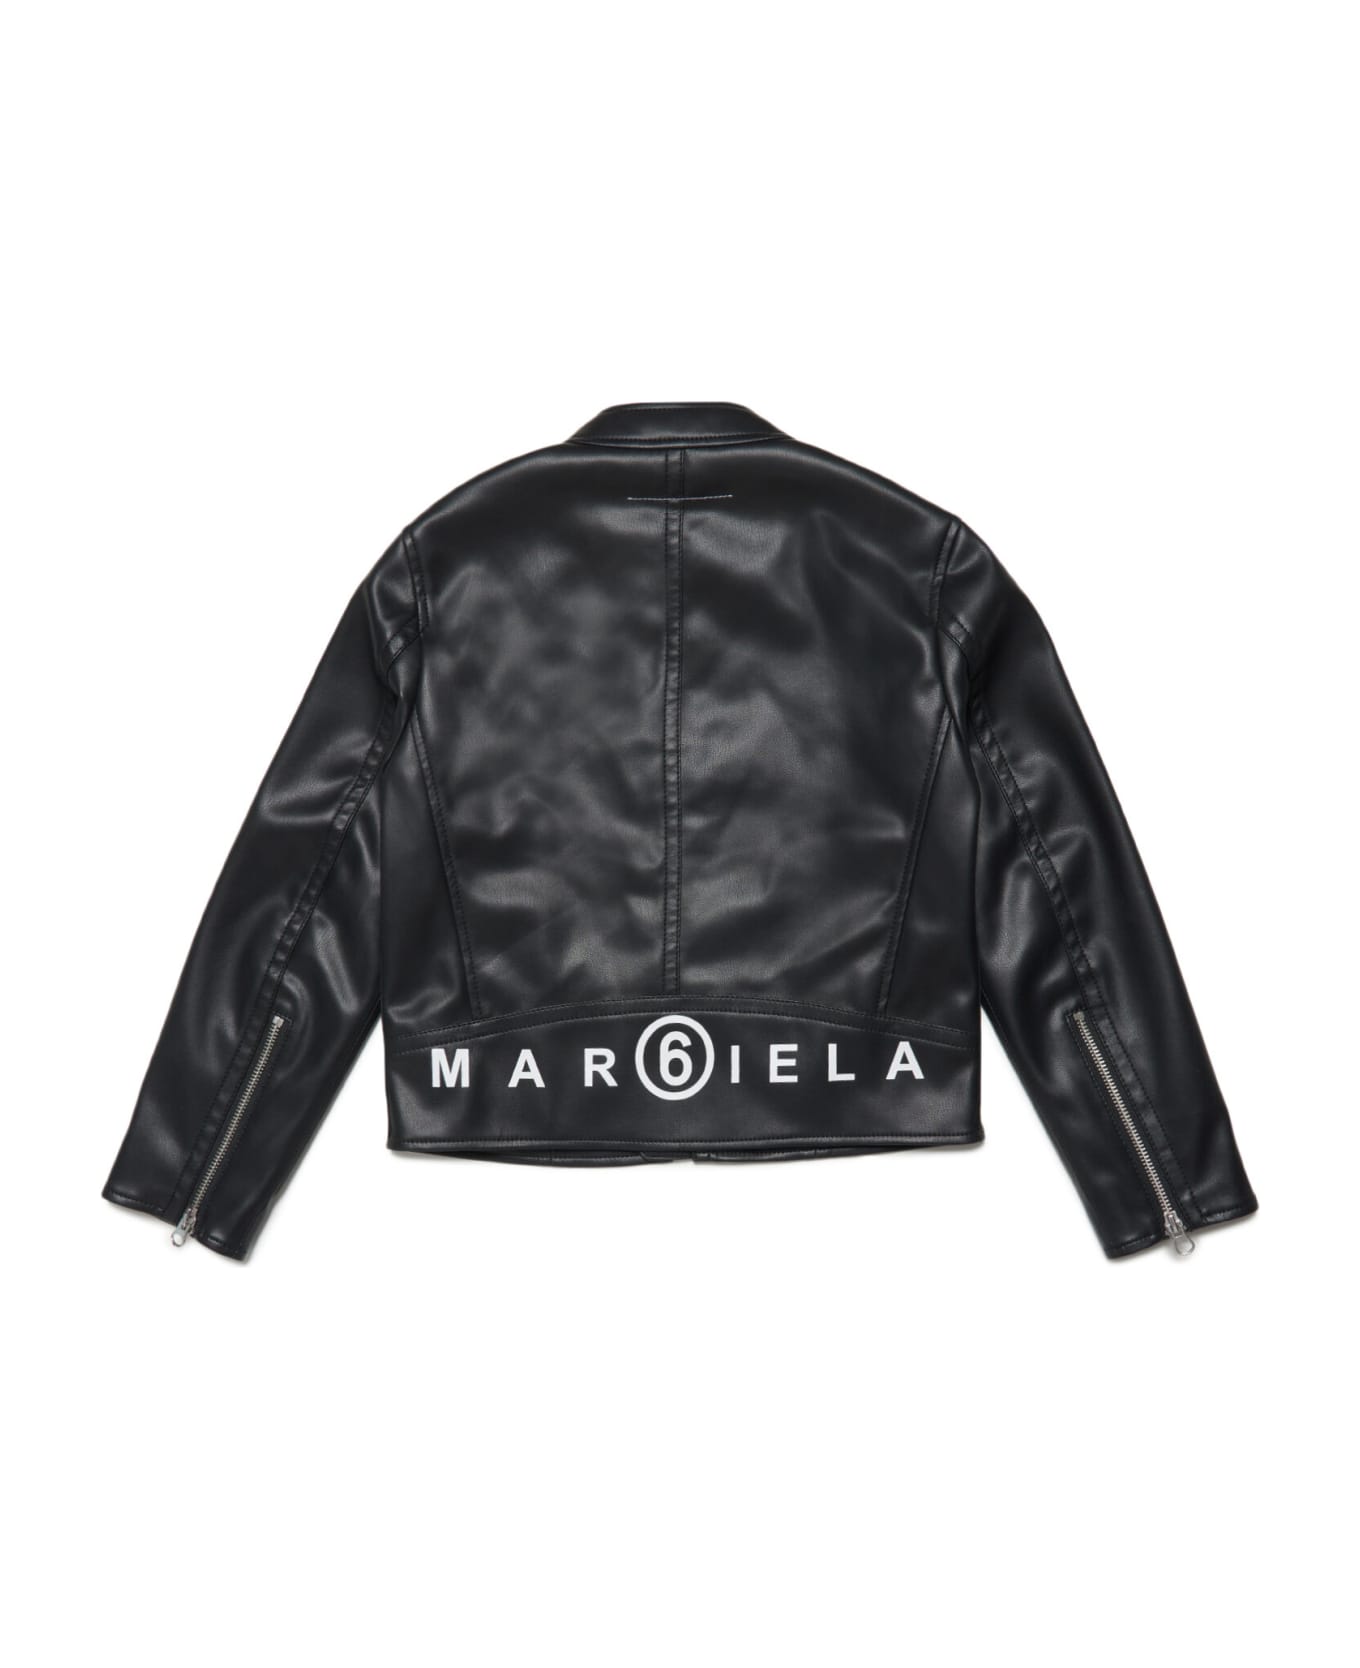 MM6 Maison Margiela Mm6j15au Jacket Maison Margiela Black Fake Leather Jacket With Logo - Black